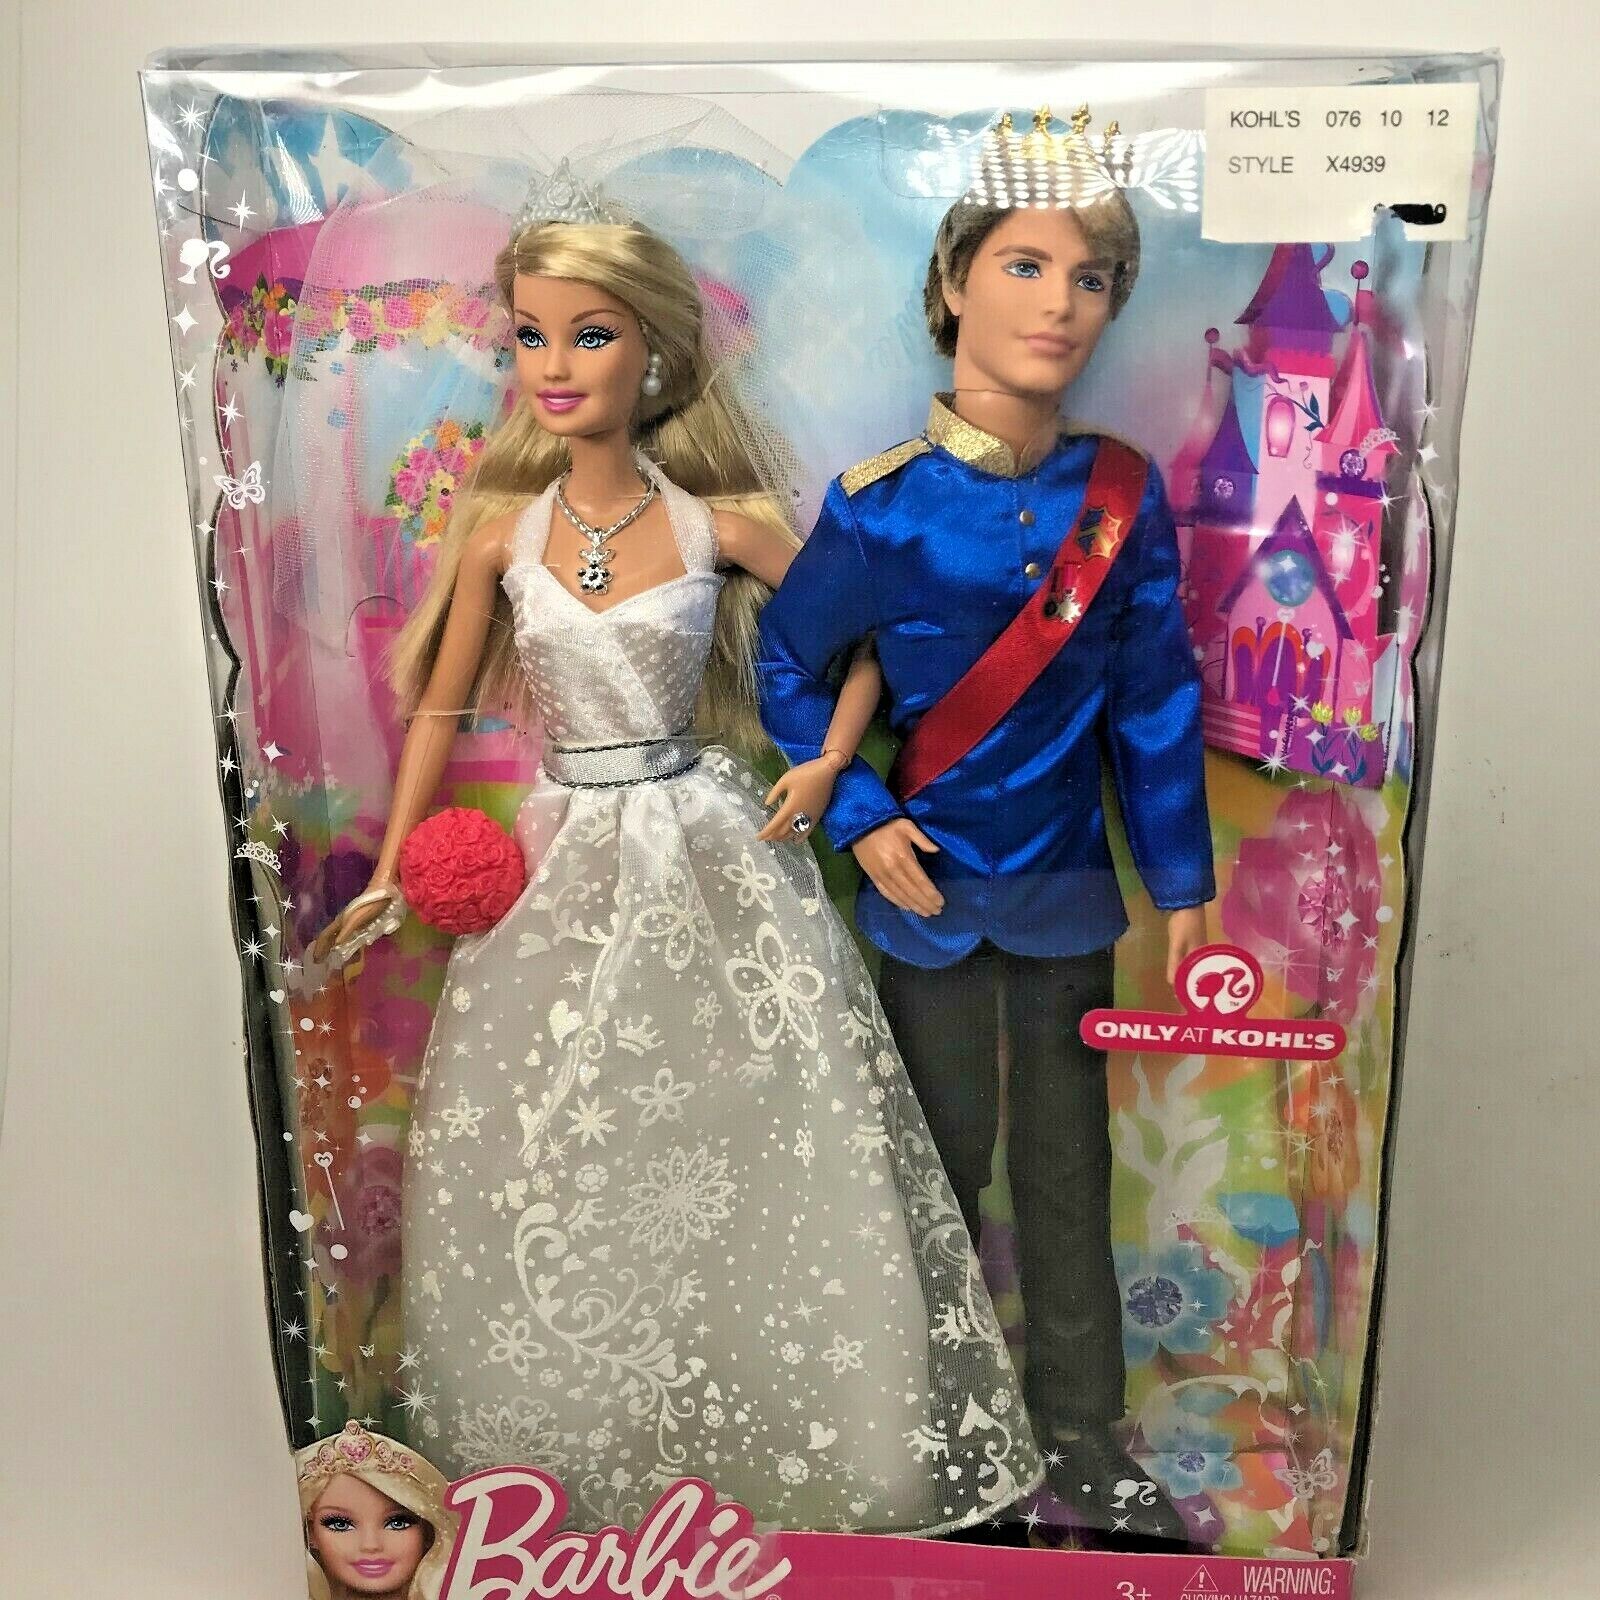 Intentie inhoud draagbaar Mattel Barbie Fairytale Wedding Doll Set Kohl's Princess Barbie & Prince Ken  Nw2 | eBay